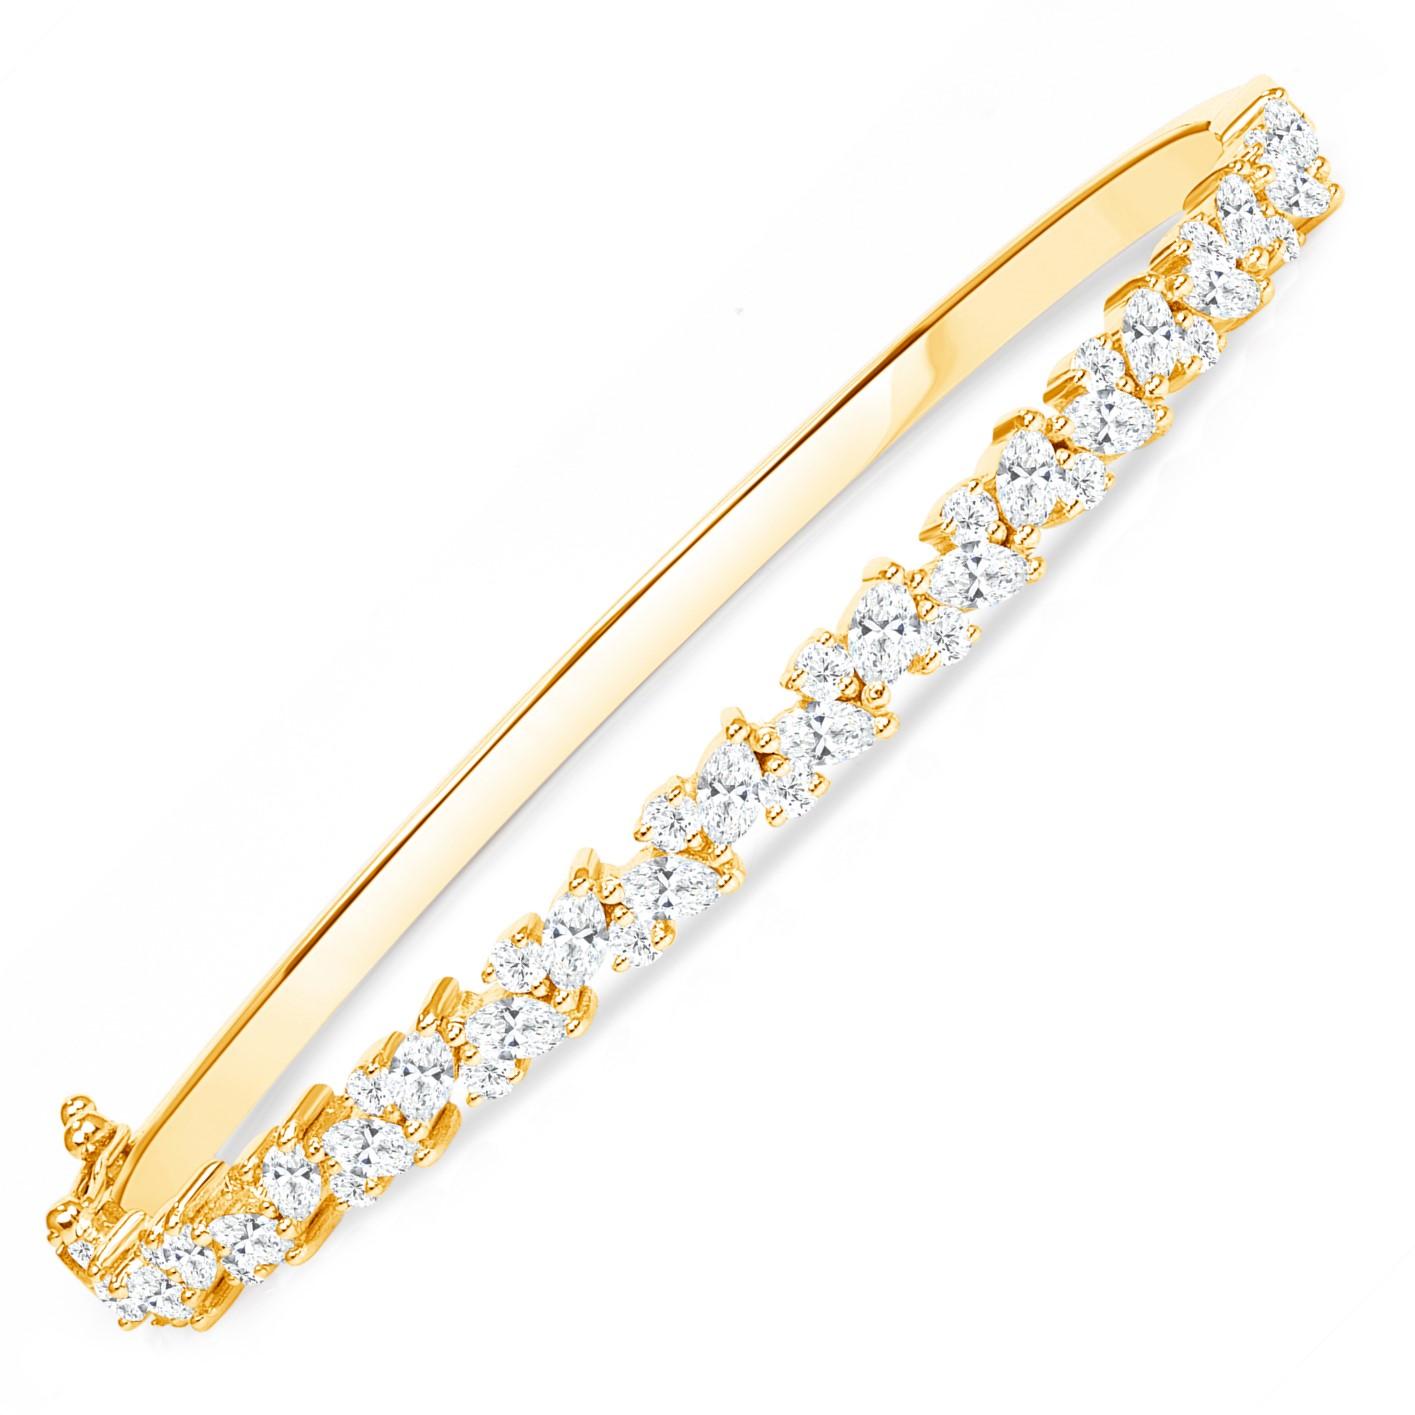 Bracelet massif en or jaune 18K avec diamant marquise  Combiné avec des diamants ronds

Bracelet solide avec une rangée de diamants brillants, ce bangle au design de vigne est un bijou intemporel et éternellement élégant. La combinaison de diamants